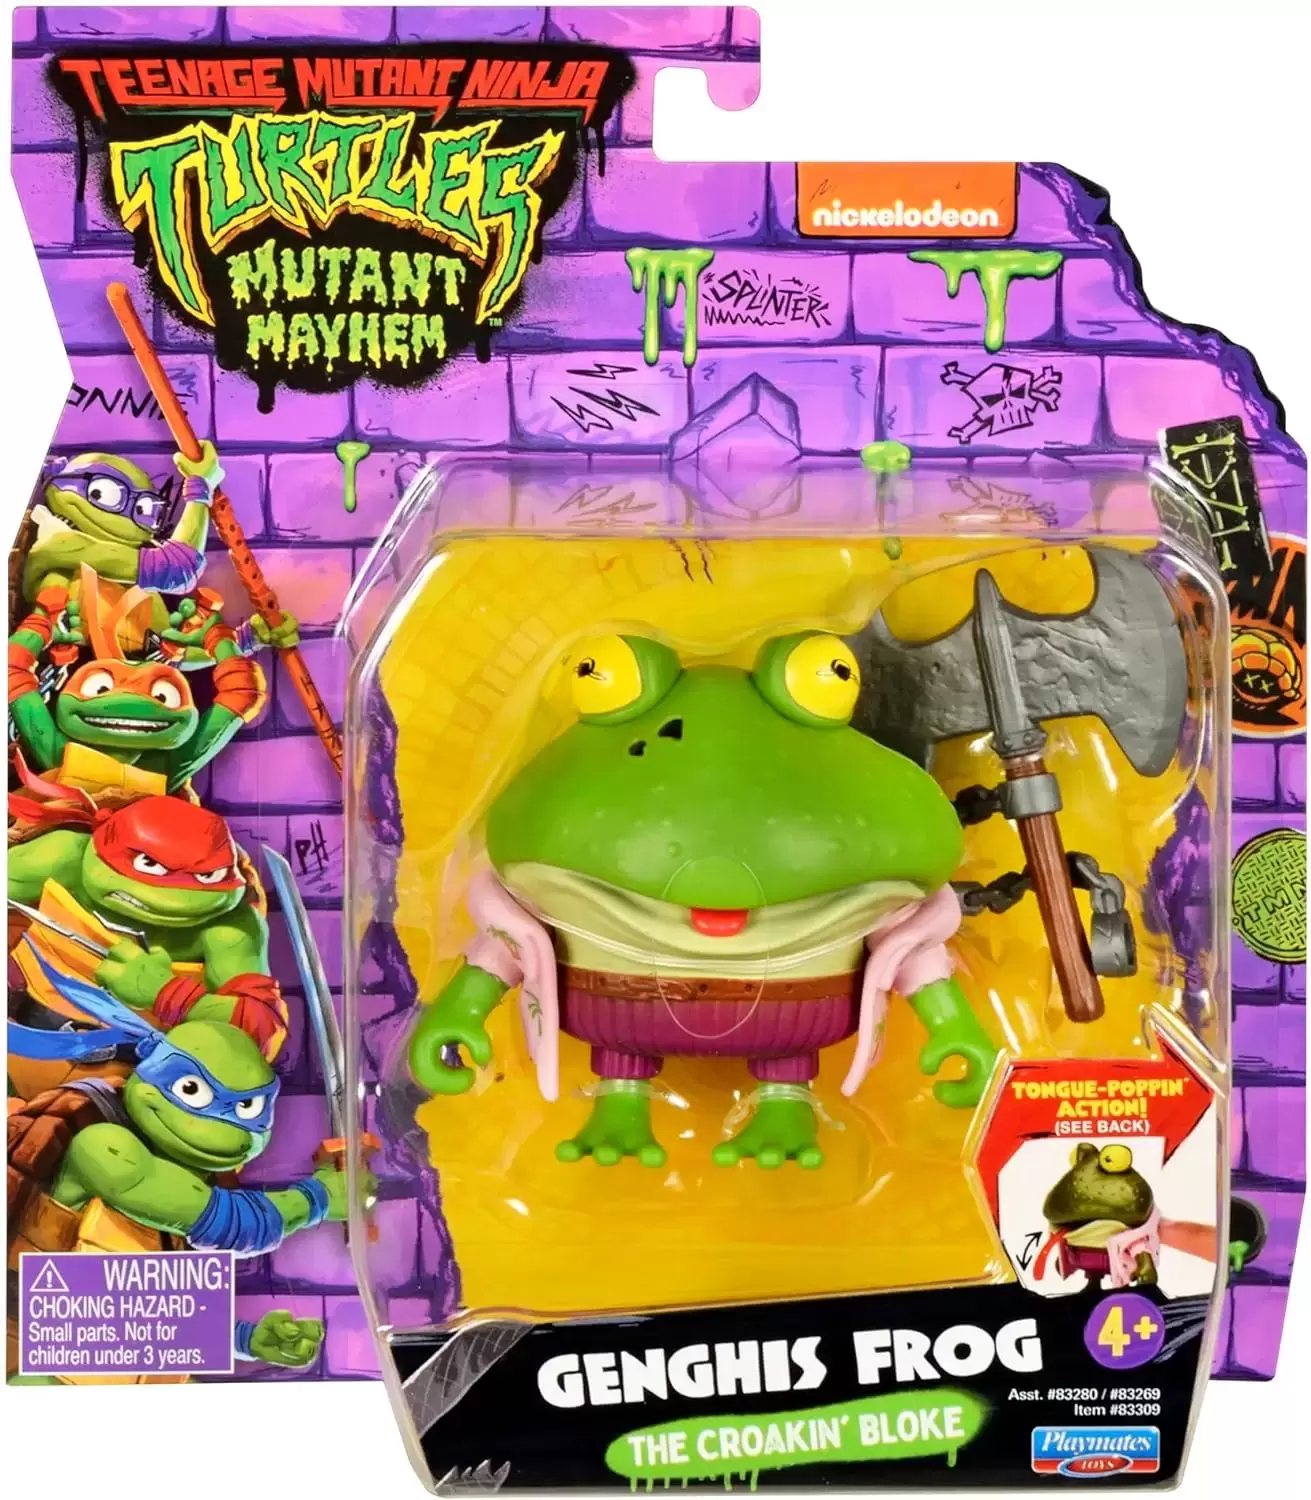 Teenage Mutant Ninja Turtles Mutant Mayhem - Genghis Frog